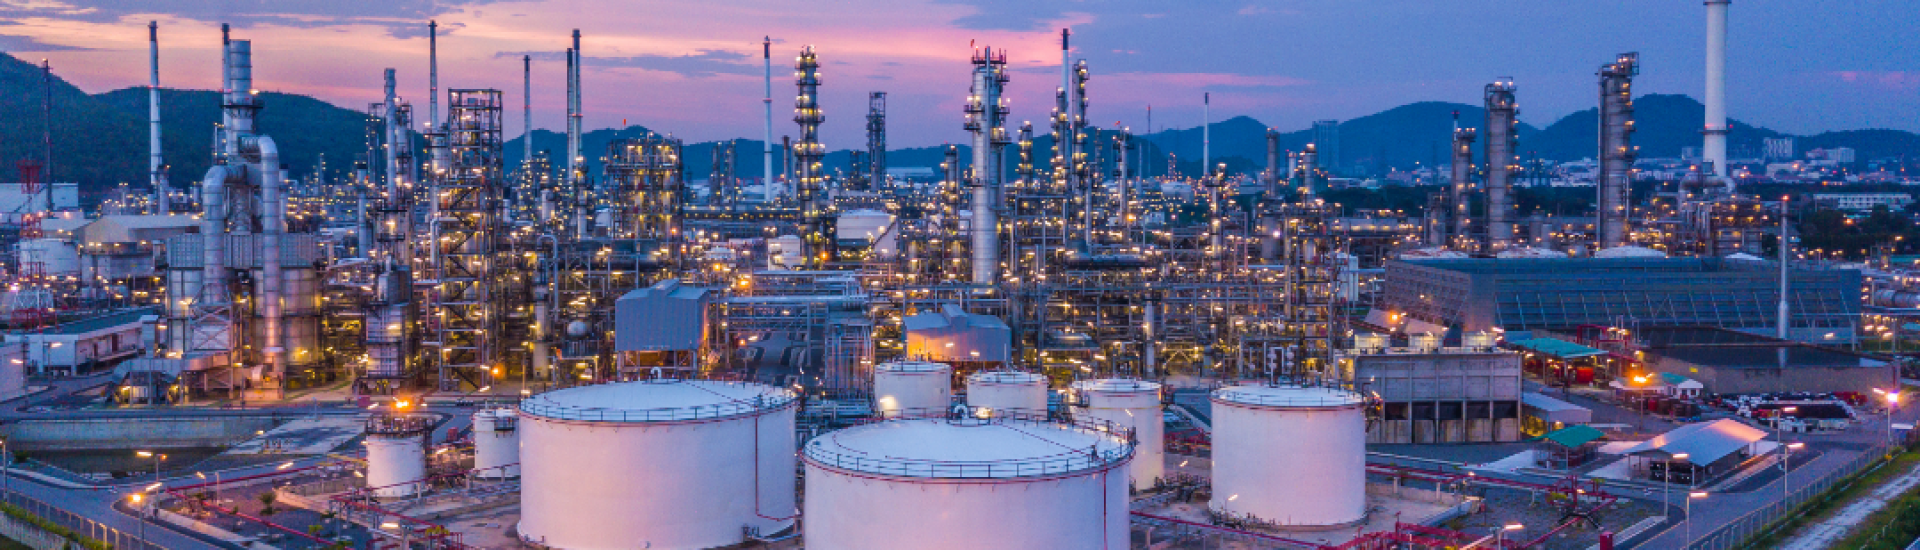 Сравнительное руководство по нефти и газу: Казахстан